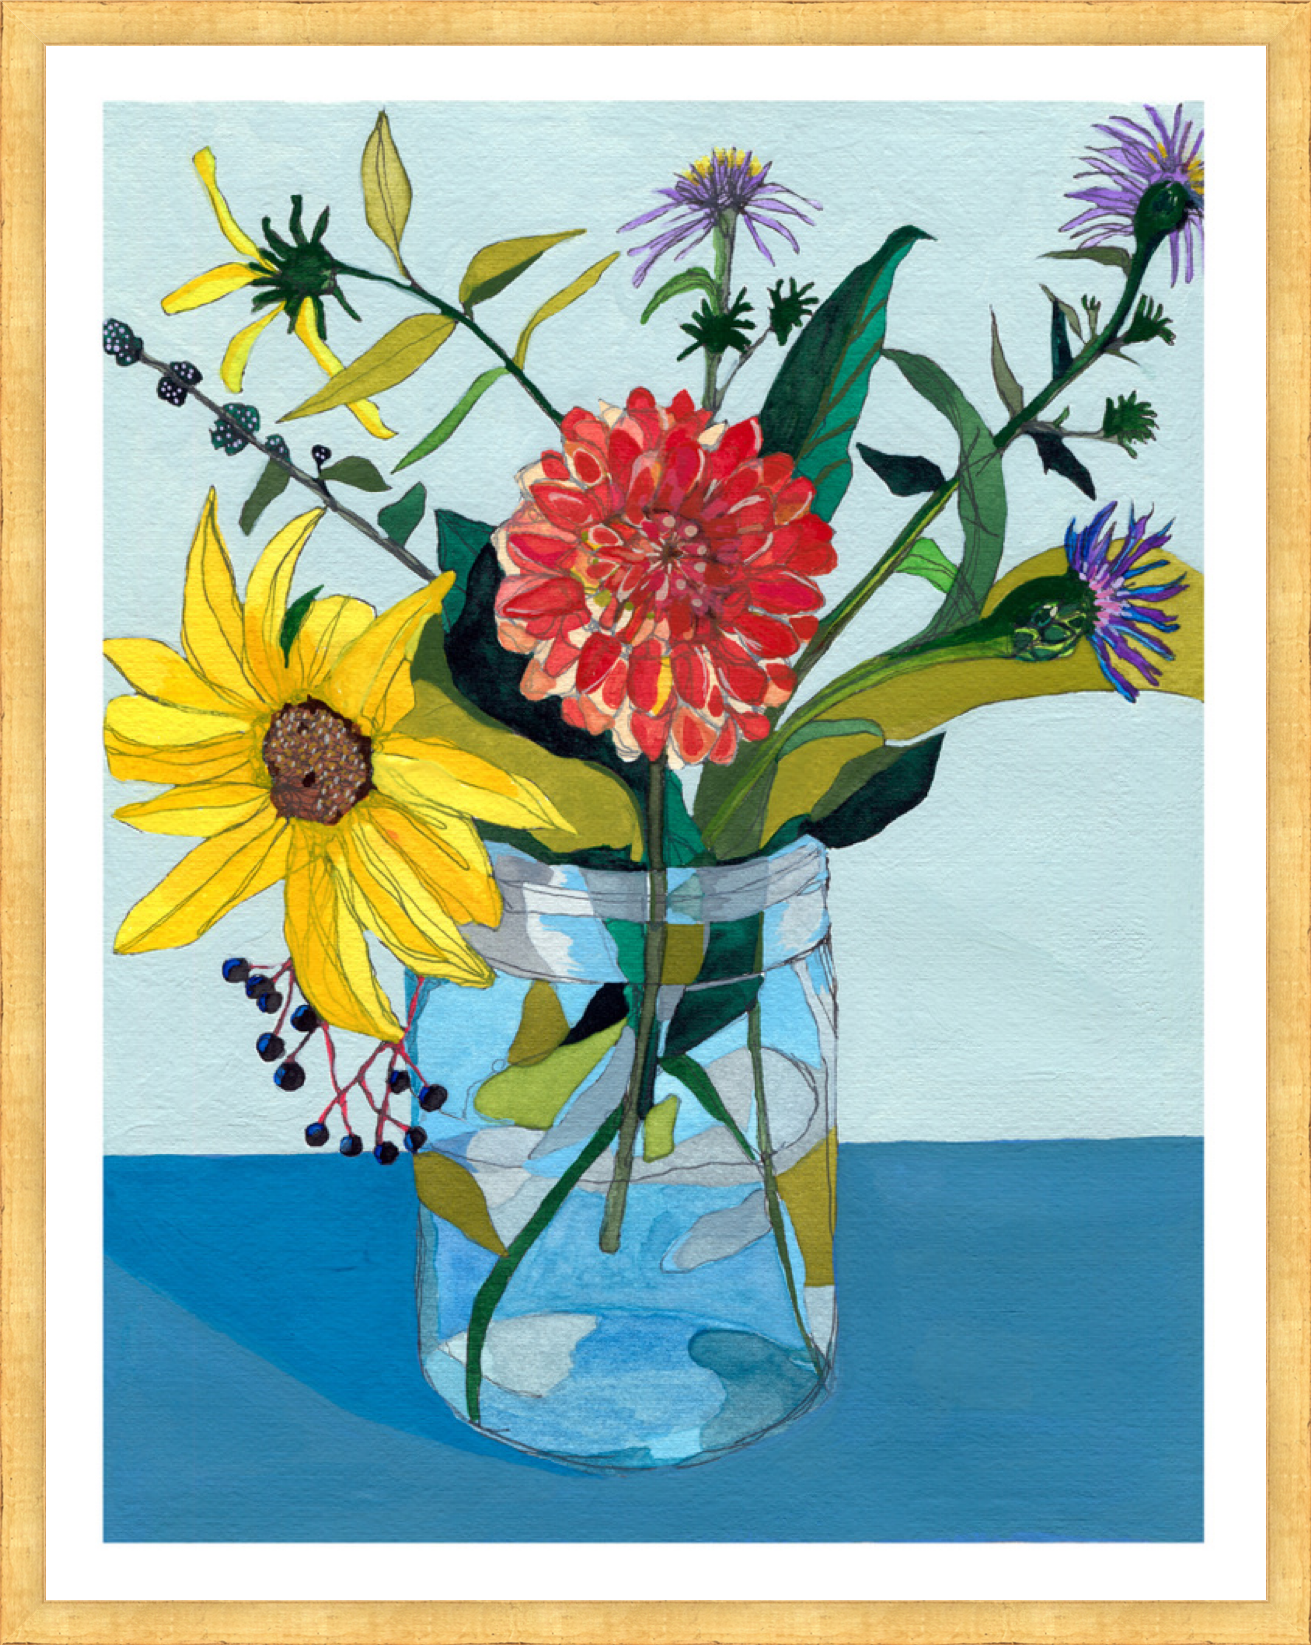 Summer to Fall: Sunflower – print by Malaika Ross